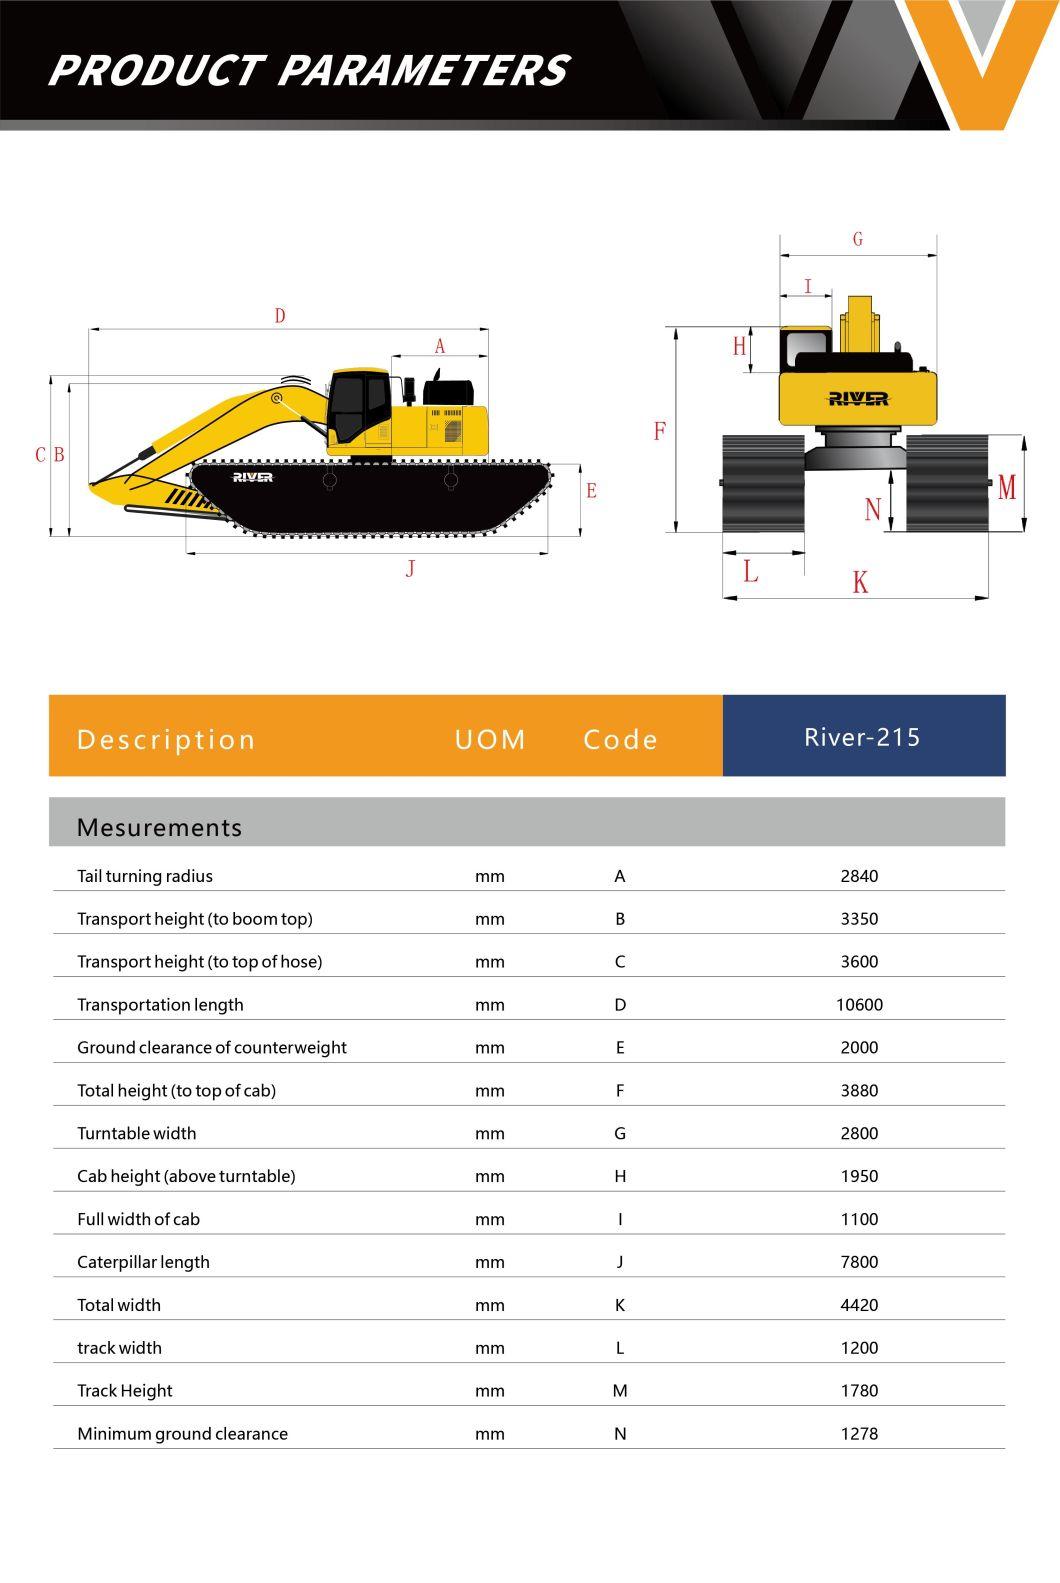 River-215 Amphibious Excavator Dredging Equipment Factory Price